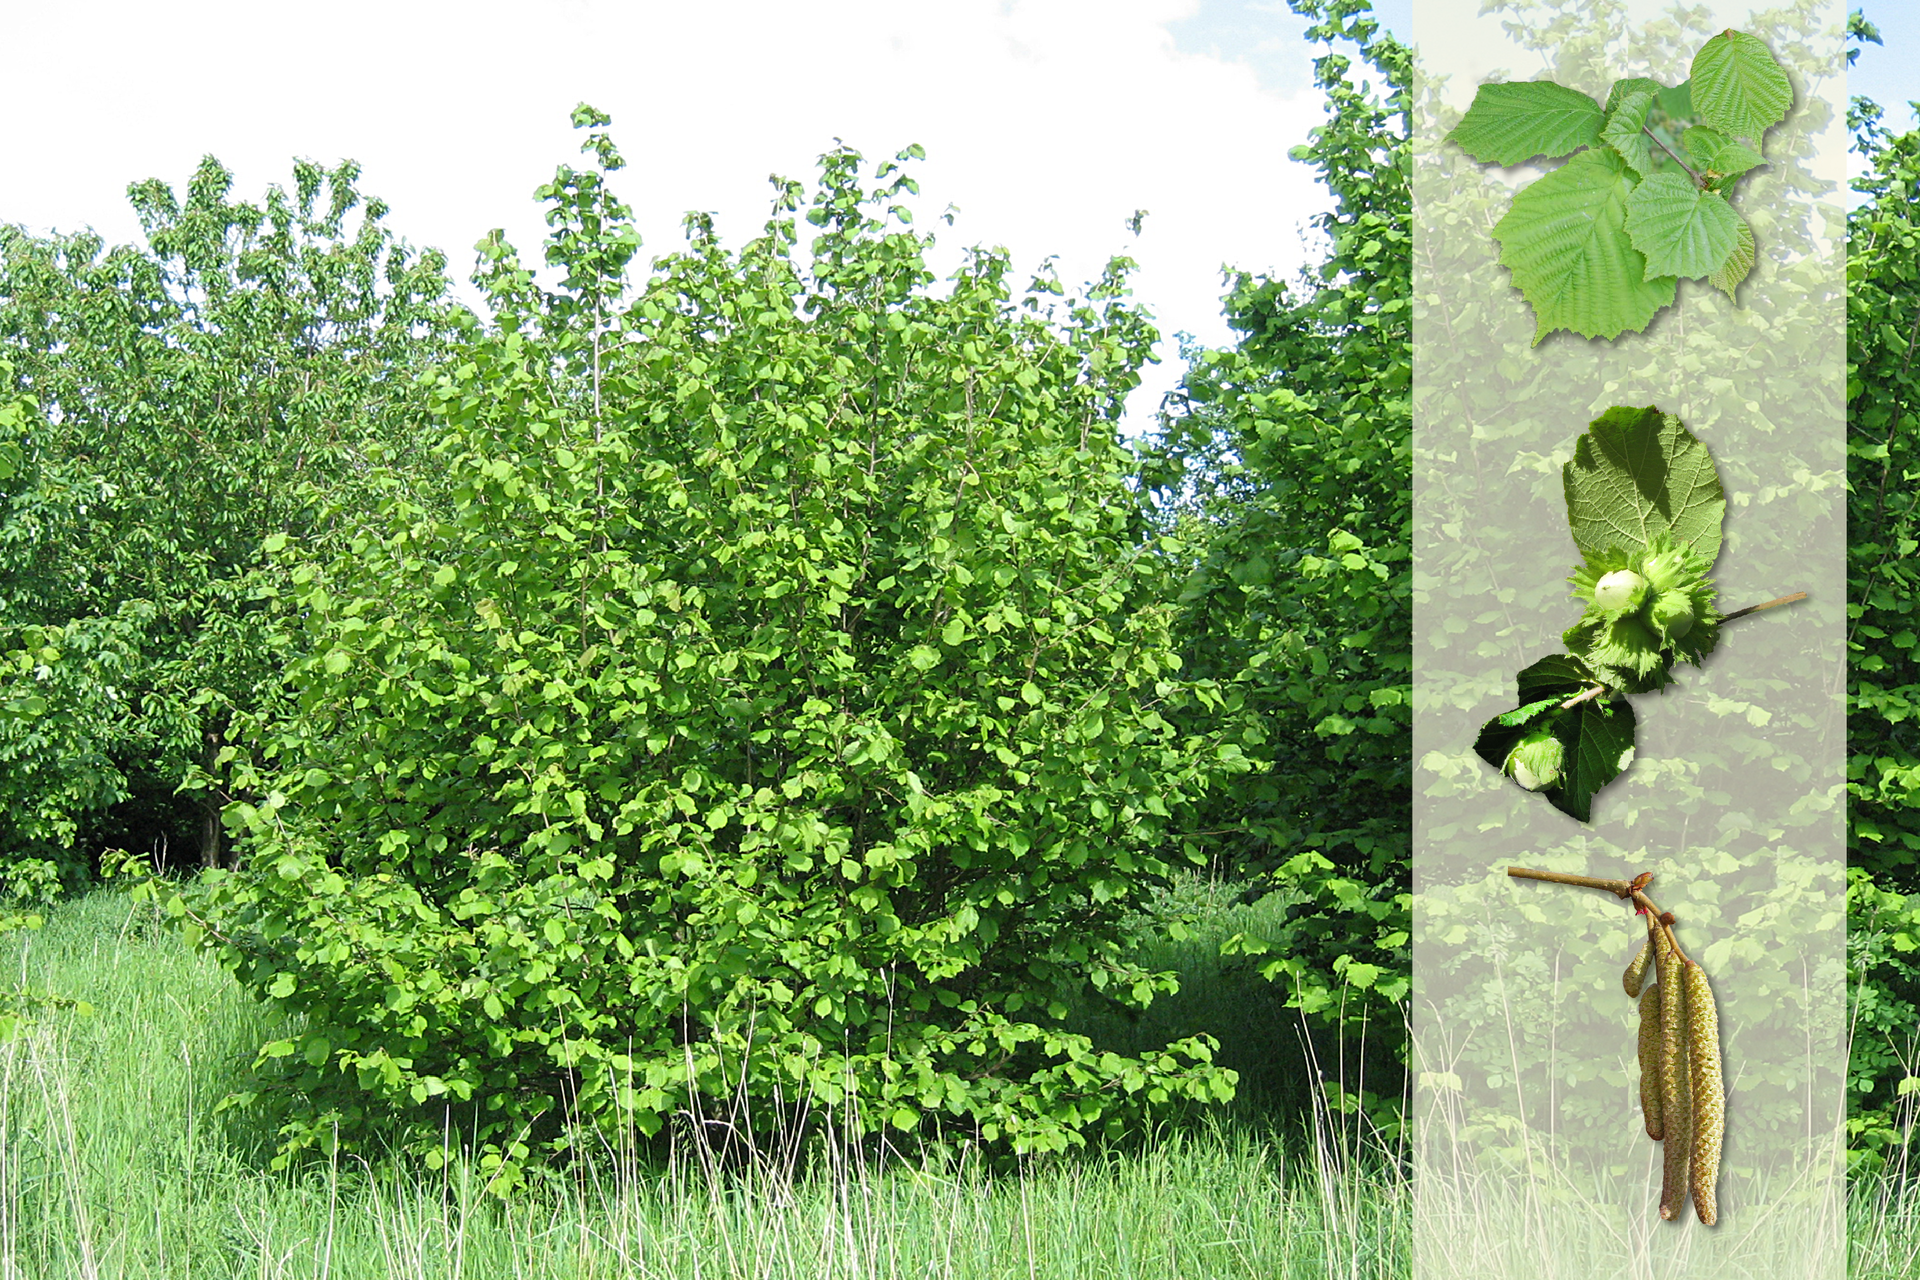 Fotografia przedstawia trzy krzewy leszczyny na łące. Z prawej strony nałożony jaśniejszy pasek z fotografiami. U góry szerokie liście. W środku zielone, niedojrzałe owoce – orzechy laskowe. U dołu gałązka z walcowatymi, brązowymi, zwisającymi kwiatostanami.